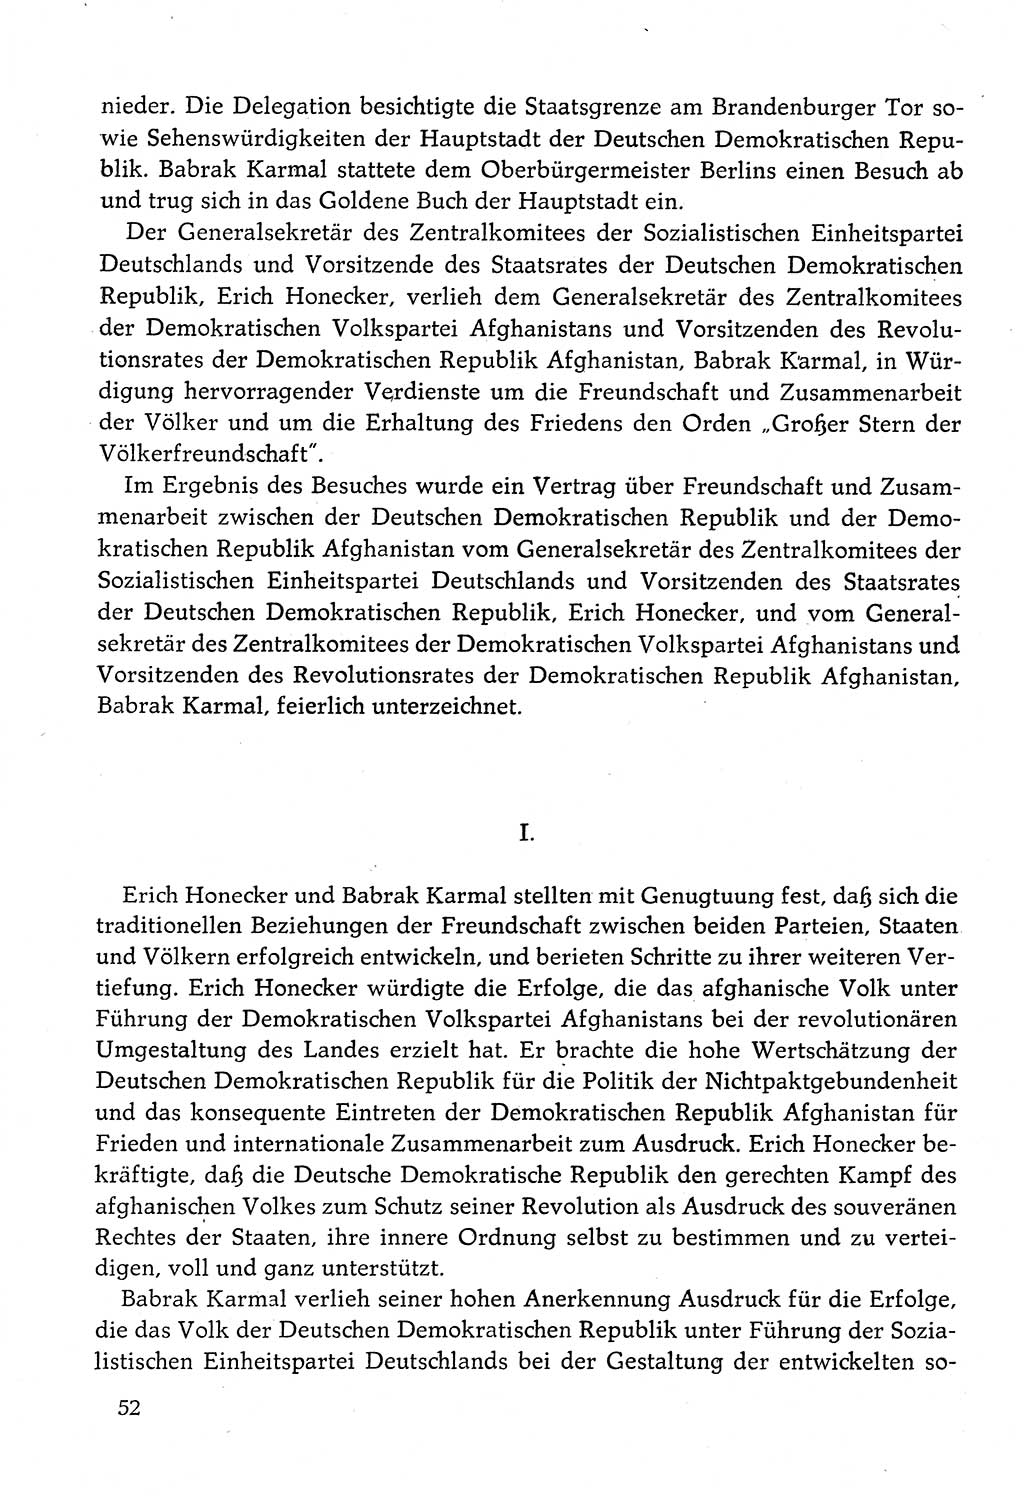 Dokumente der Sozialistischen Einheitspartei Deutschlands (SED) [Deutsche Demokratische Republik (DDR)] 1982-1983, Seite 52 (Dok. SED DDR 1982-1983, S. 52)